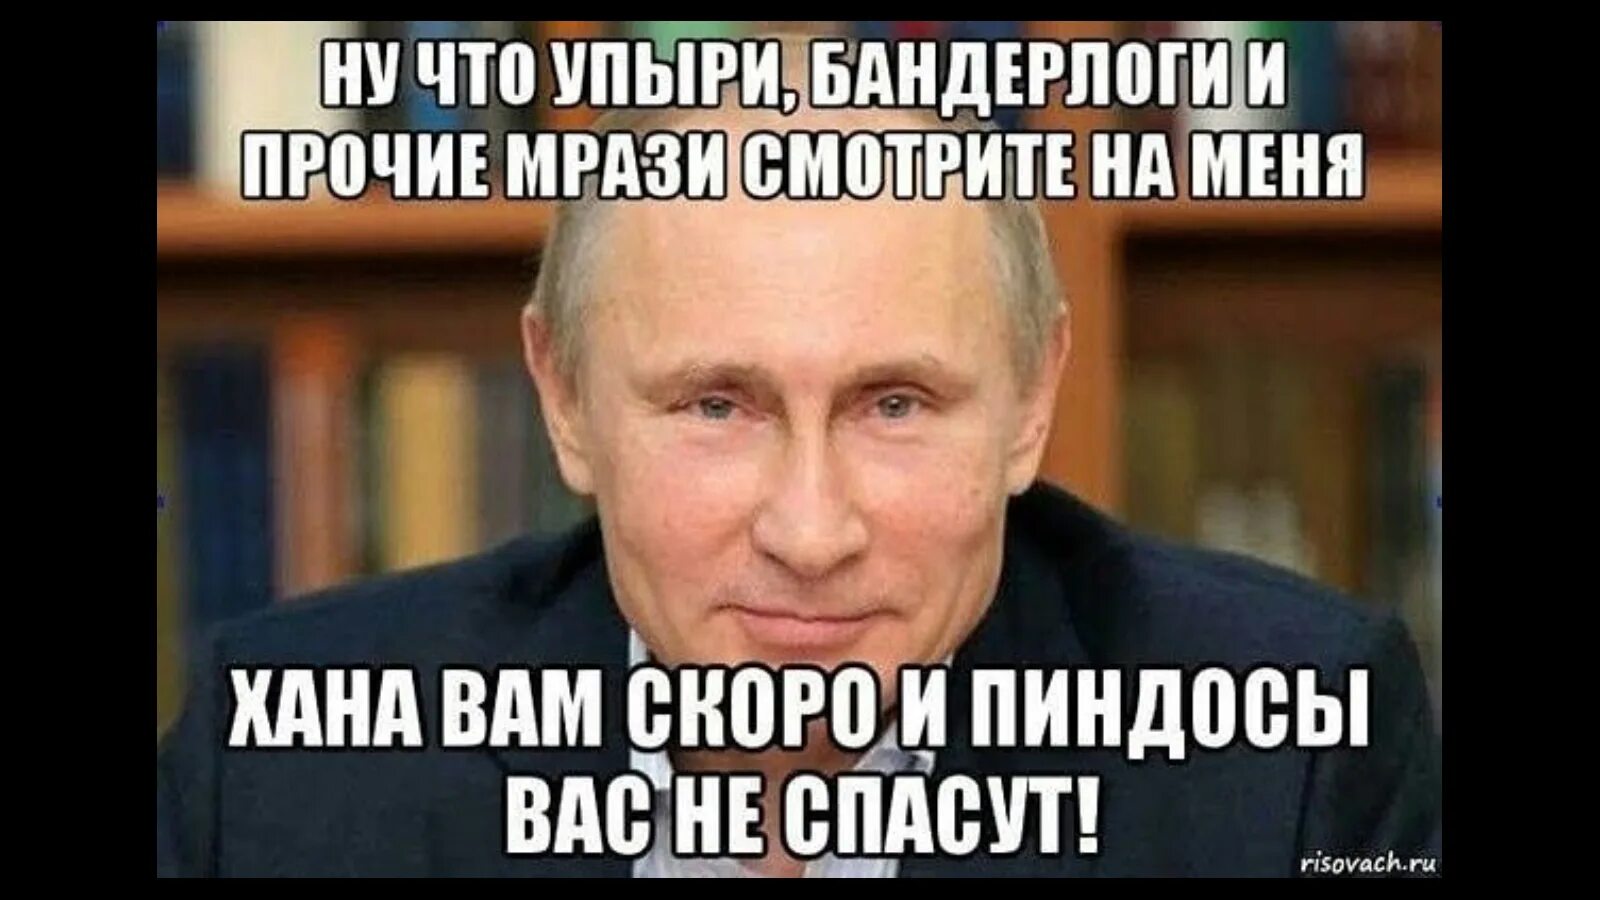 Мемы про пиндосов. Мемы с Путиным и Хохлов. Каждой мрази